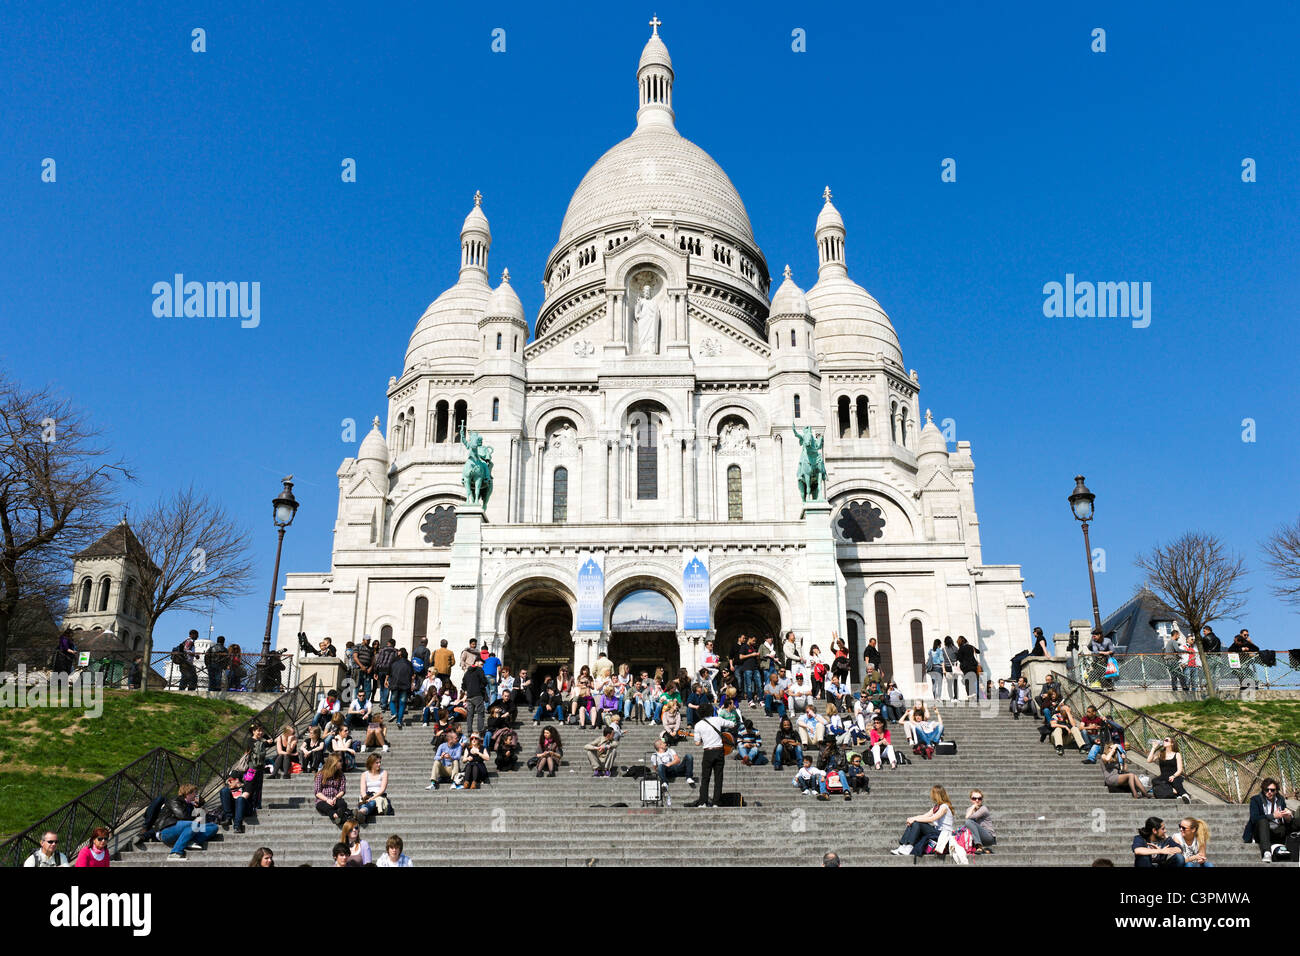 Tourists crowding the steps in front of the Basilique du Sacre-Coeur, Montmartre, Paris, France Stock Photo